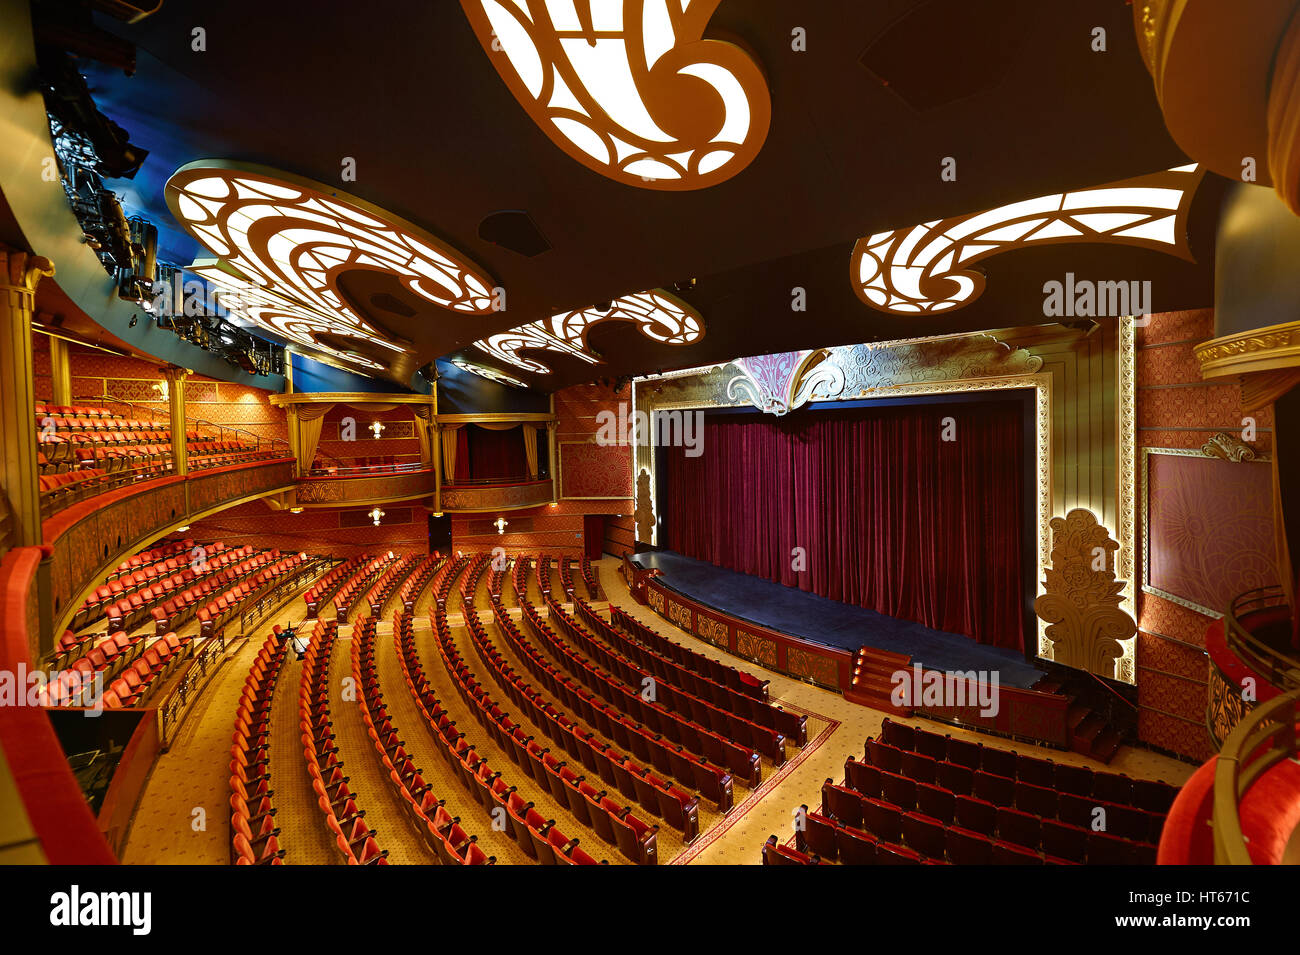 Orlando, USA - 27. April 2015: Theater im Schiff von Disney Cruise Line. Innere des modernen bunten theater Stockfoto